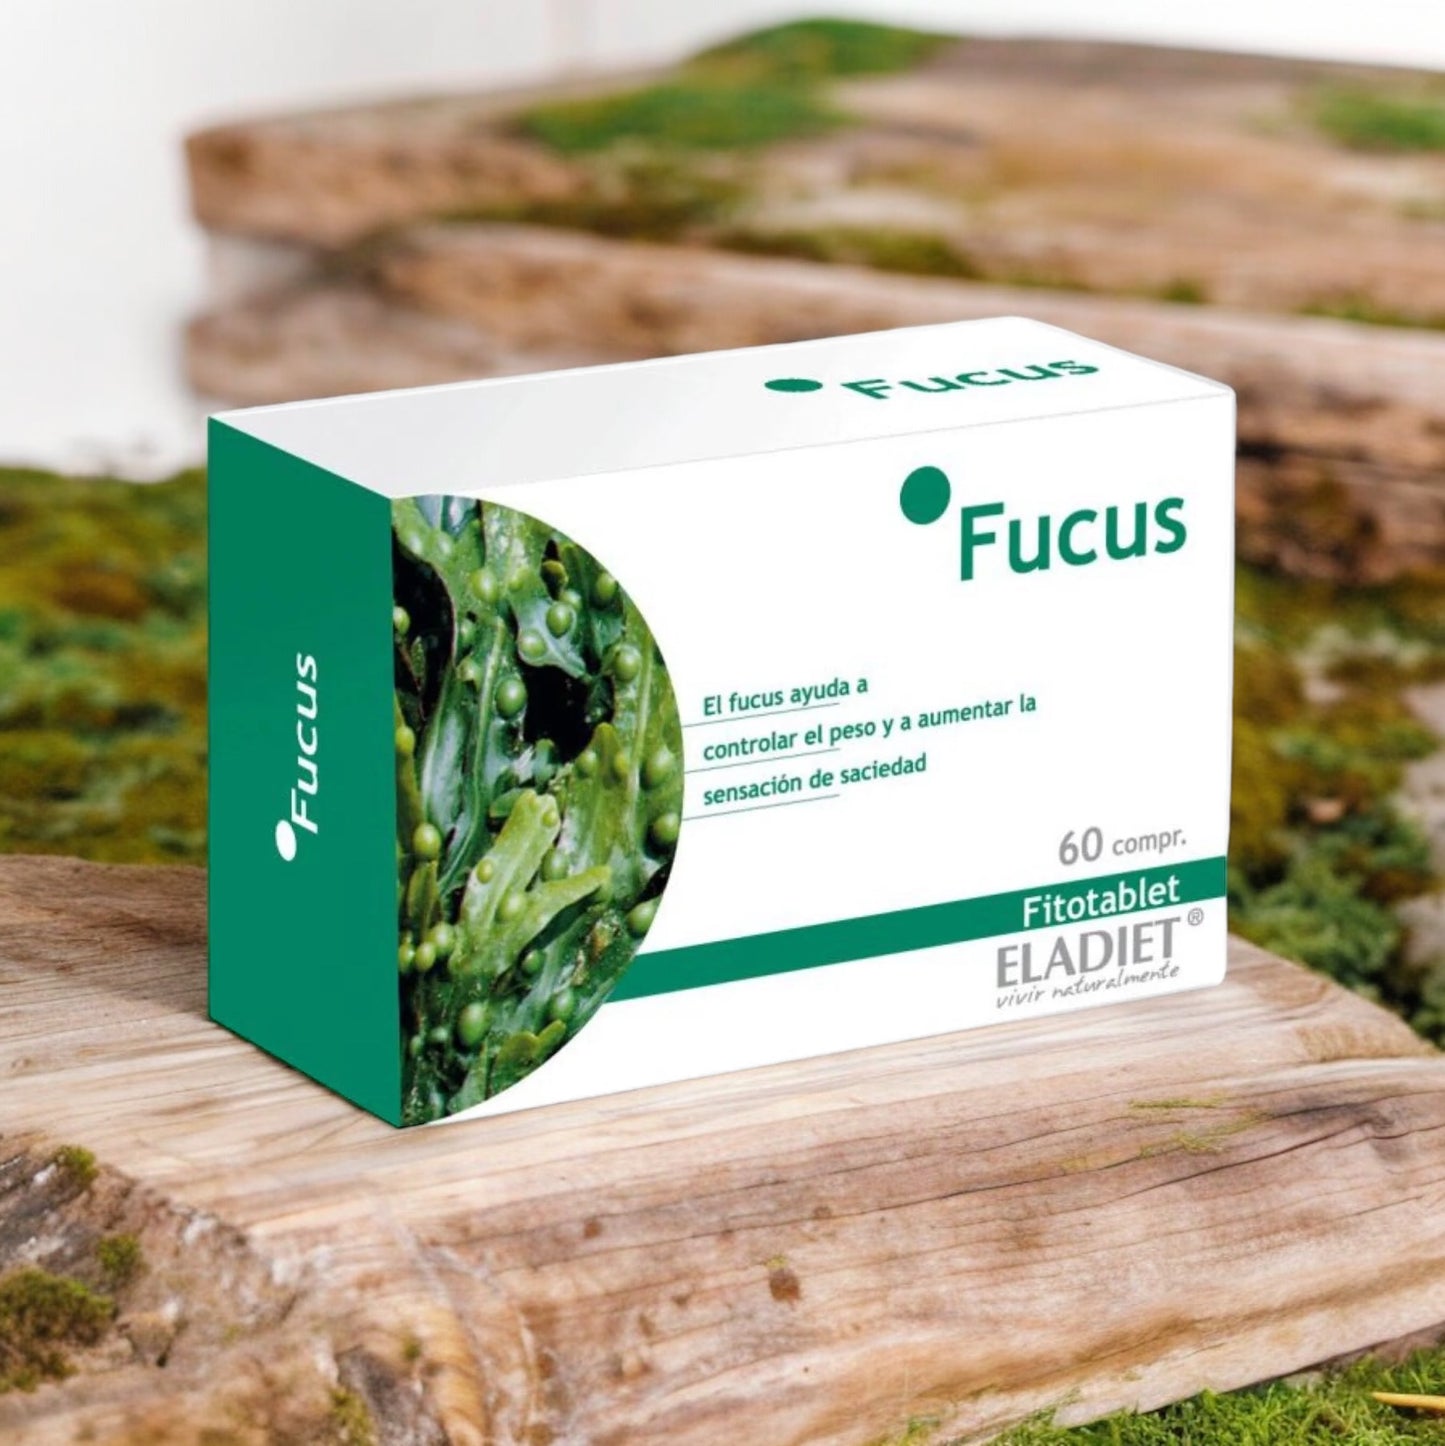 Eladiet Fucus 60 Comprimidos